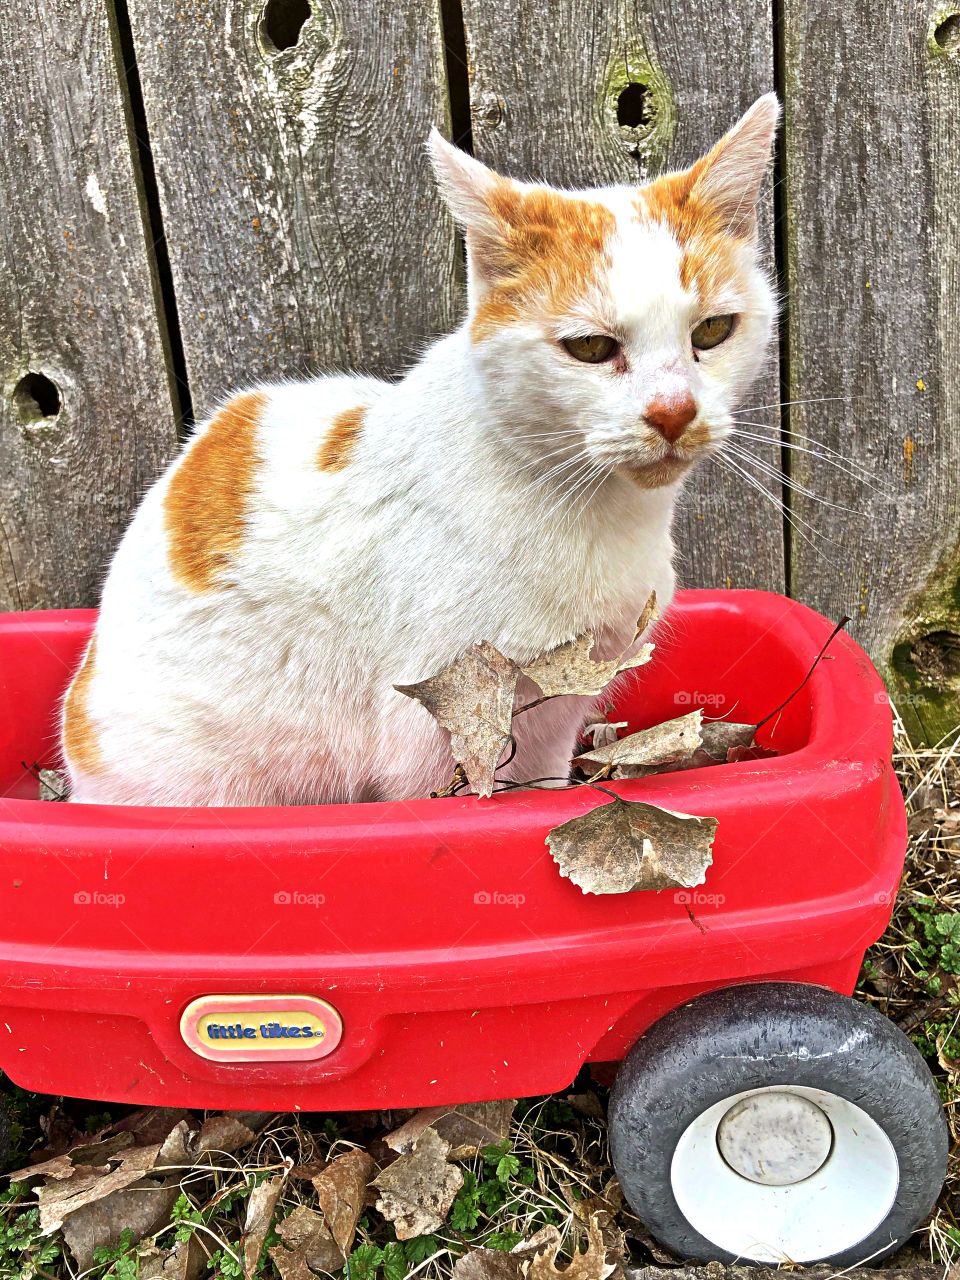 Cat in little wagon